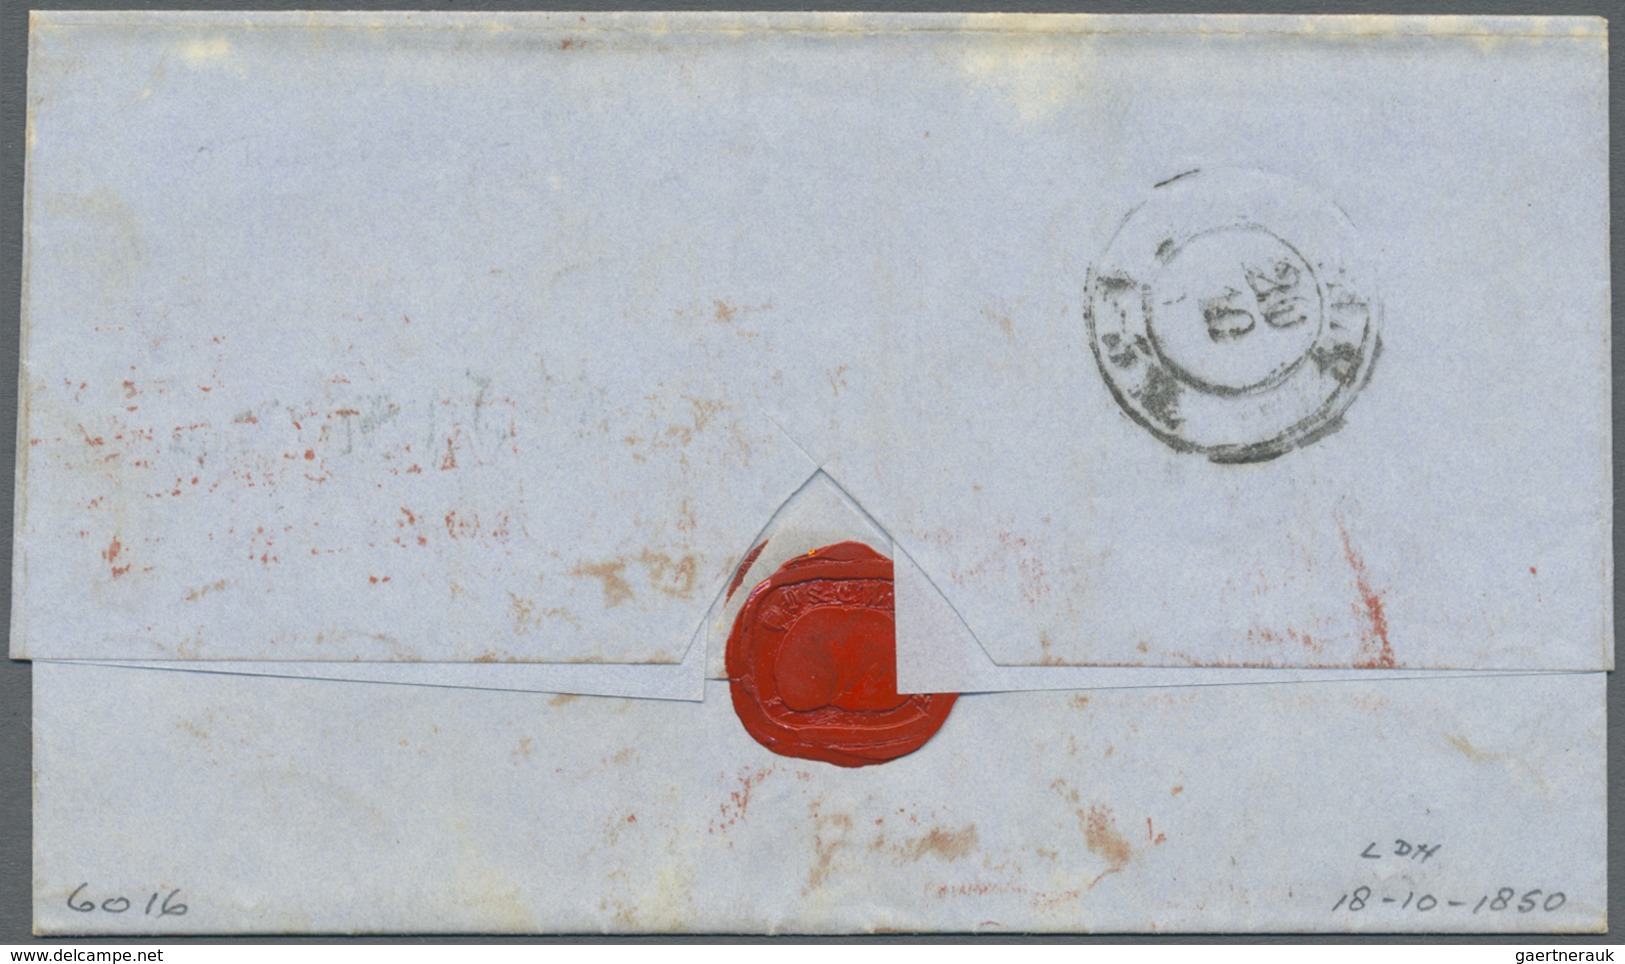 Br Großbritannien - Vorphilatelie: 1850, Taxed Letter From London "St. James St" To Colgne, Prussia Sho - ...-1840 Préphilatélie